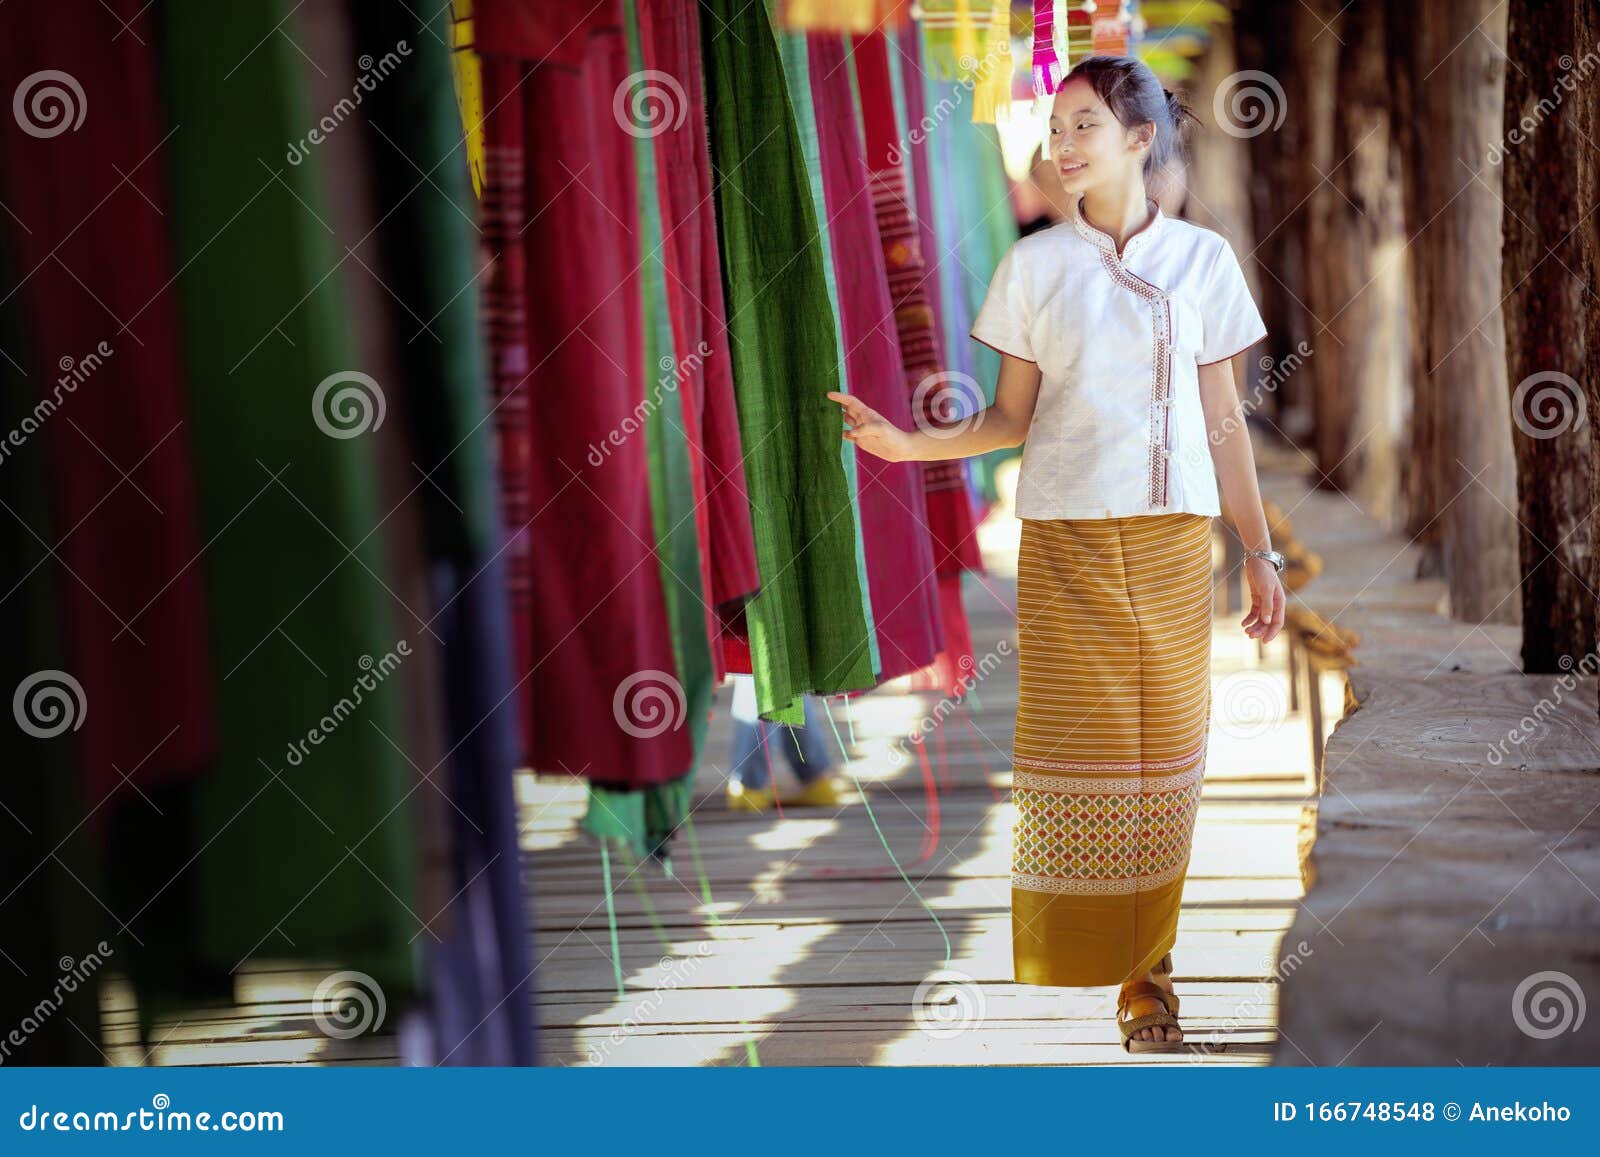 泰国王室都是时尚达人，妙手打造泰服文化 - 知乎